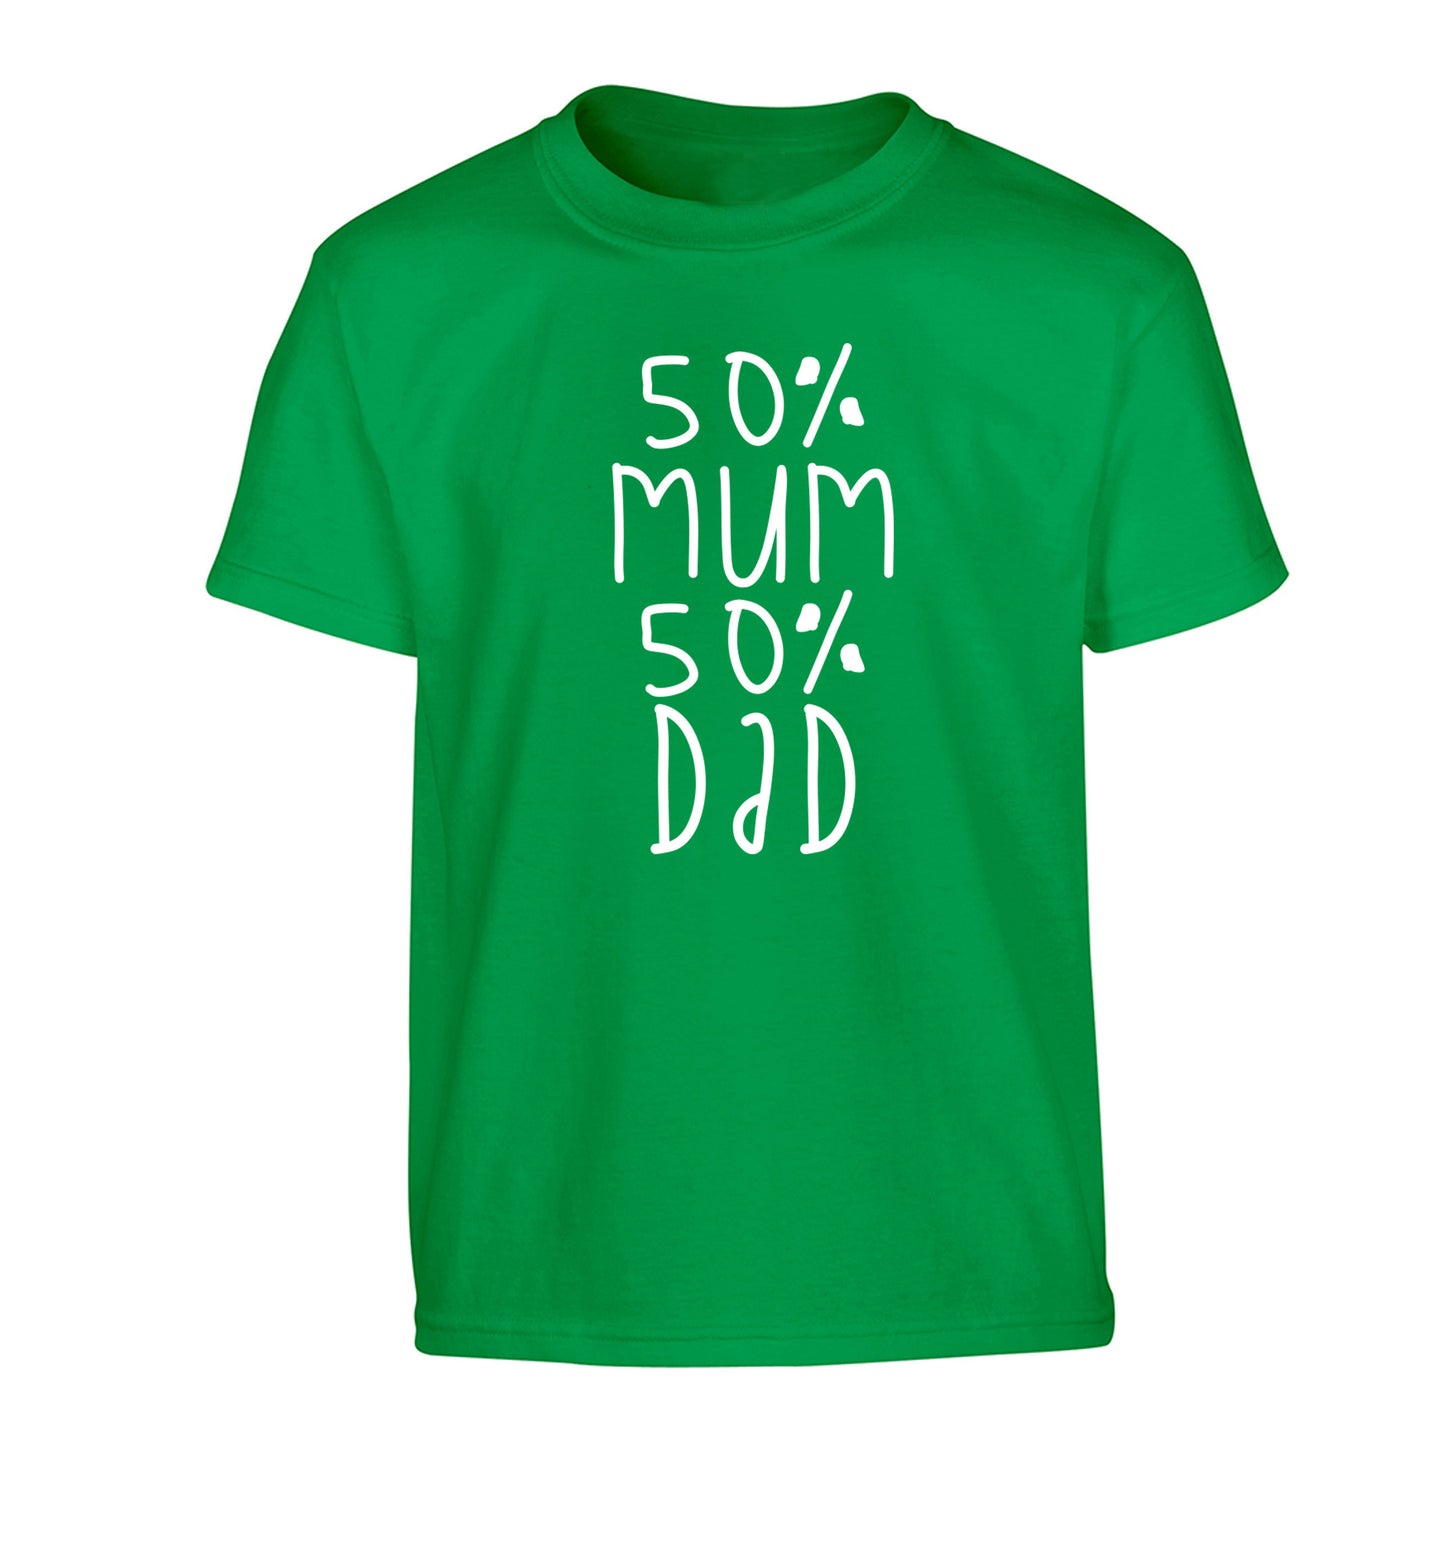 50% mum 50% dad Children's green Tshirt 12-14 Years